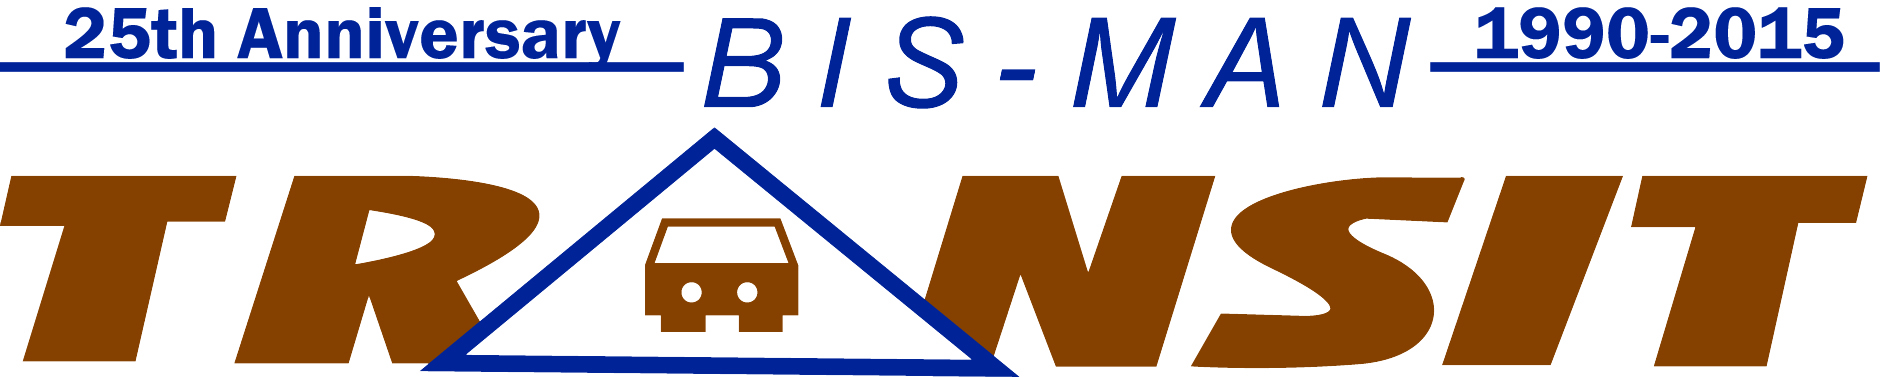 Bis-Man Transit Logo 5